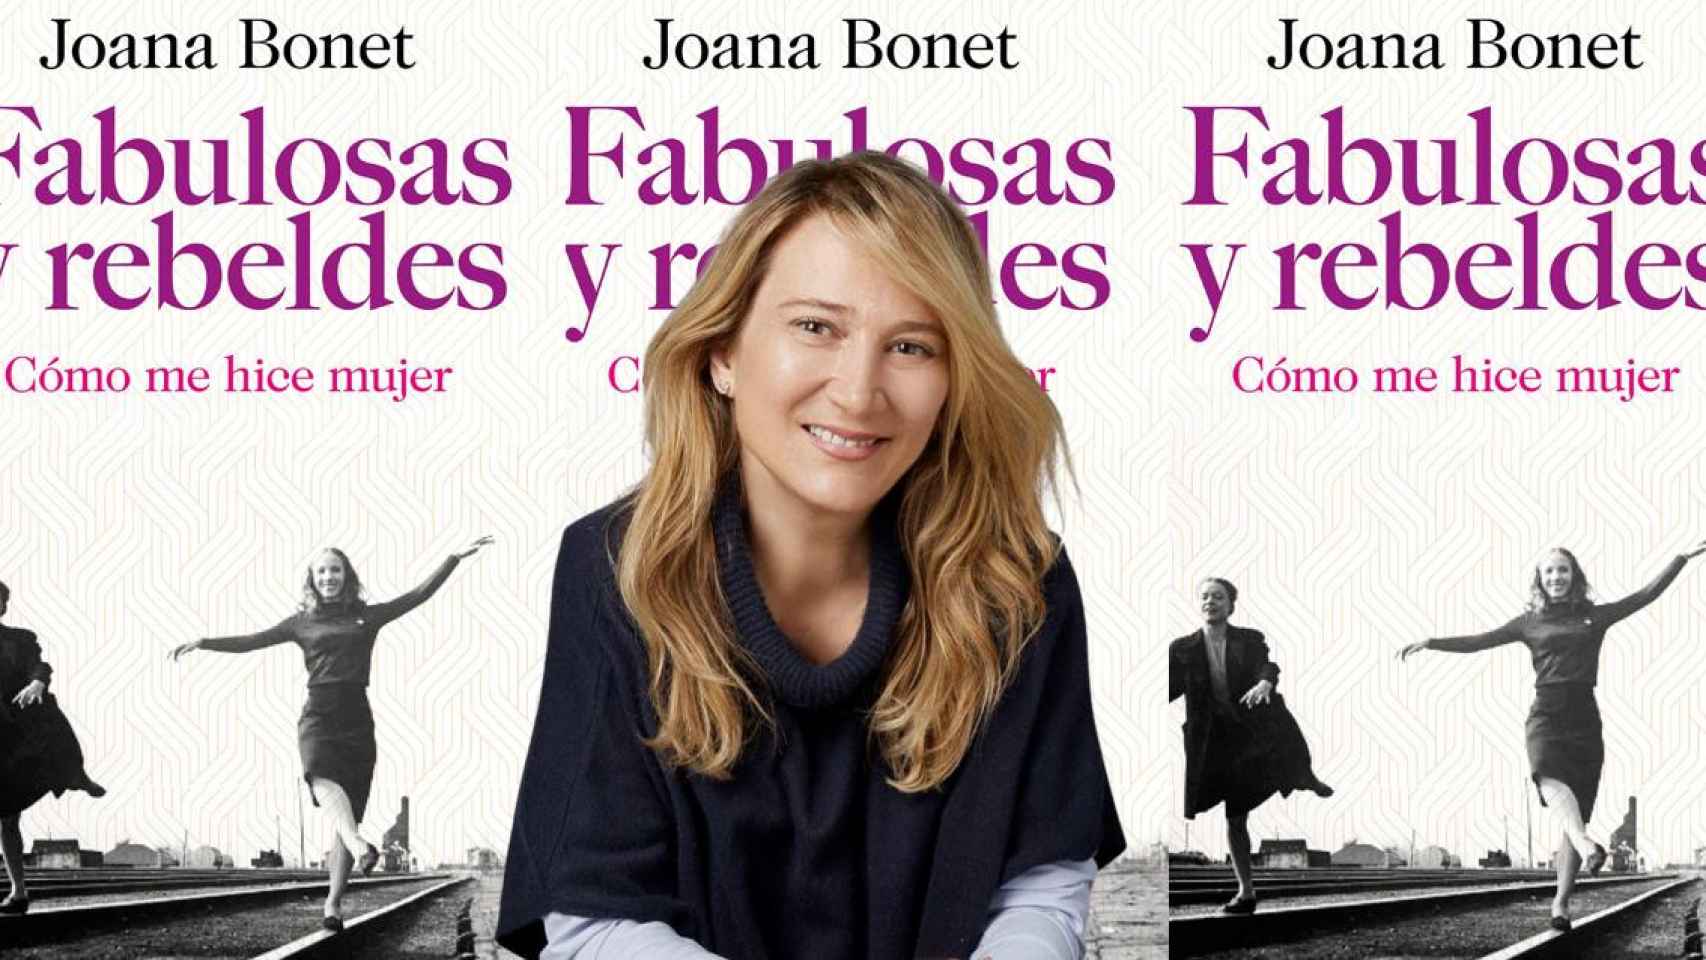 Joana Bonet junto a su último libro Fabulosas y rebeldes